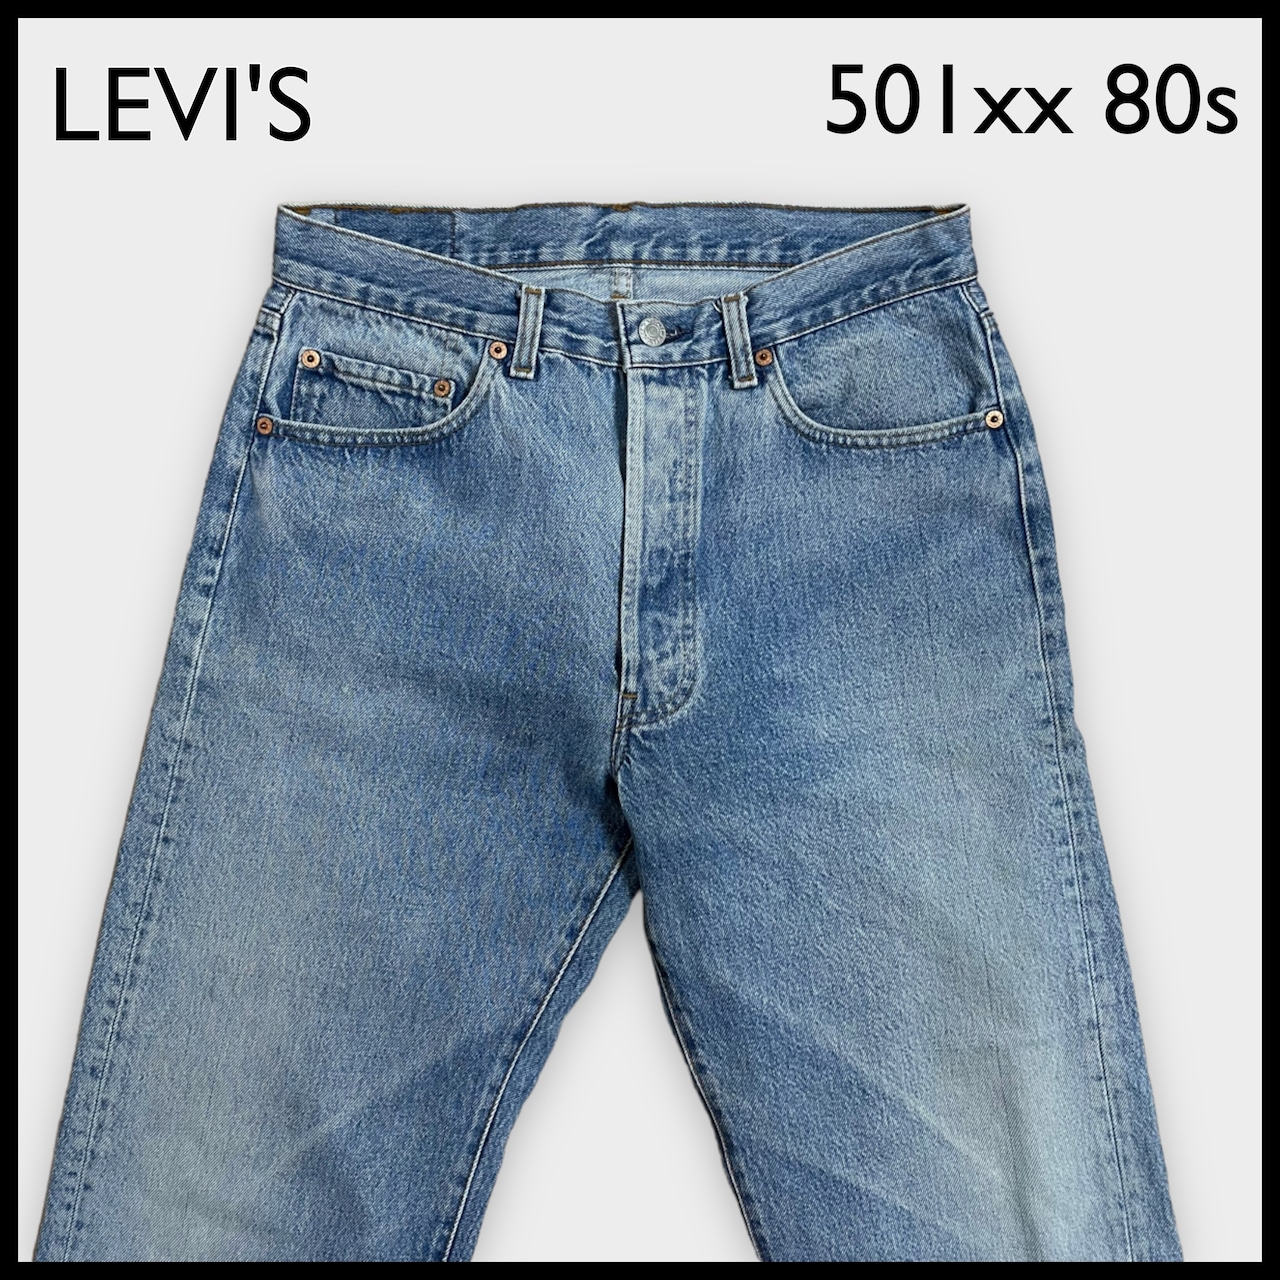 【LEVI'S】80s USA製 デニム ジーパン ジーンズ 501xx W34 ボタン裏刻印555 バレンシア工場 リーバイス US古着